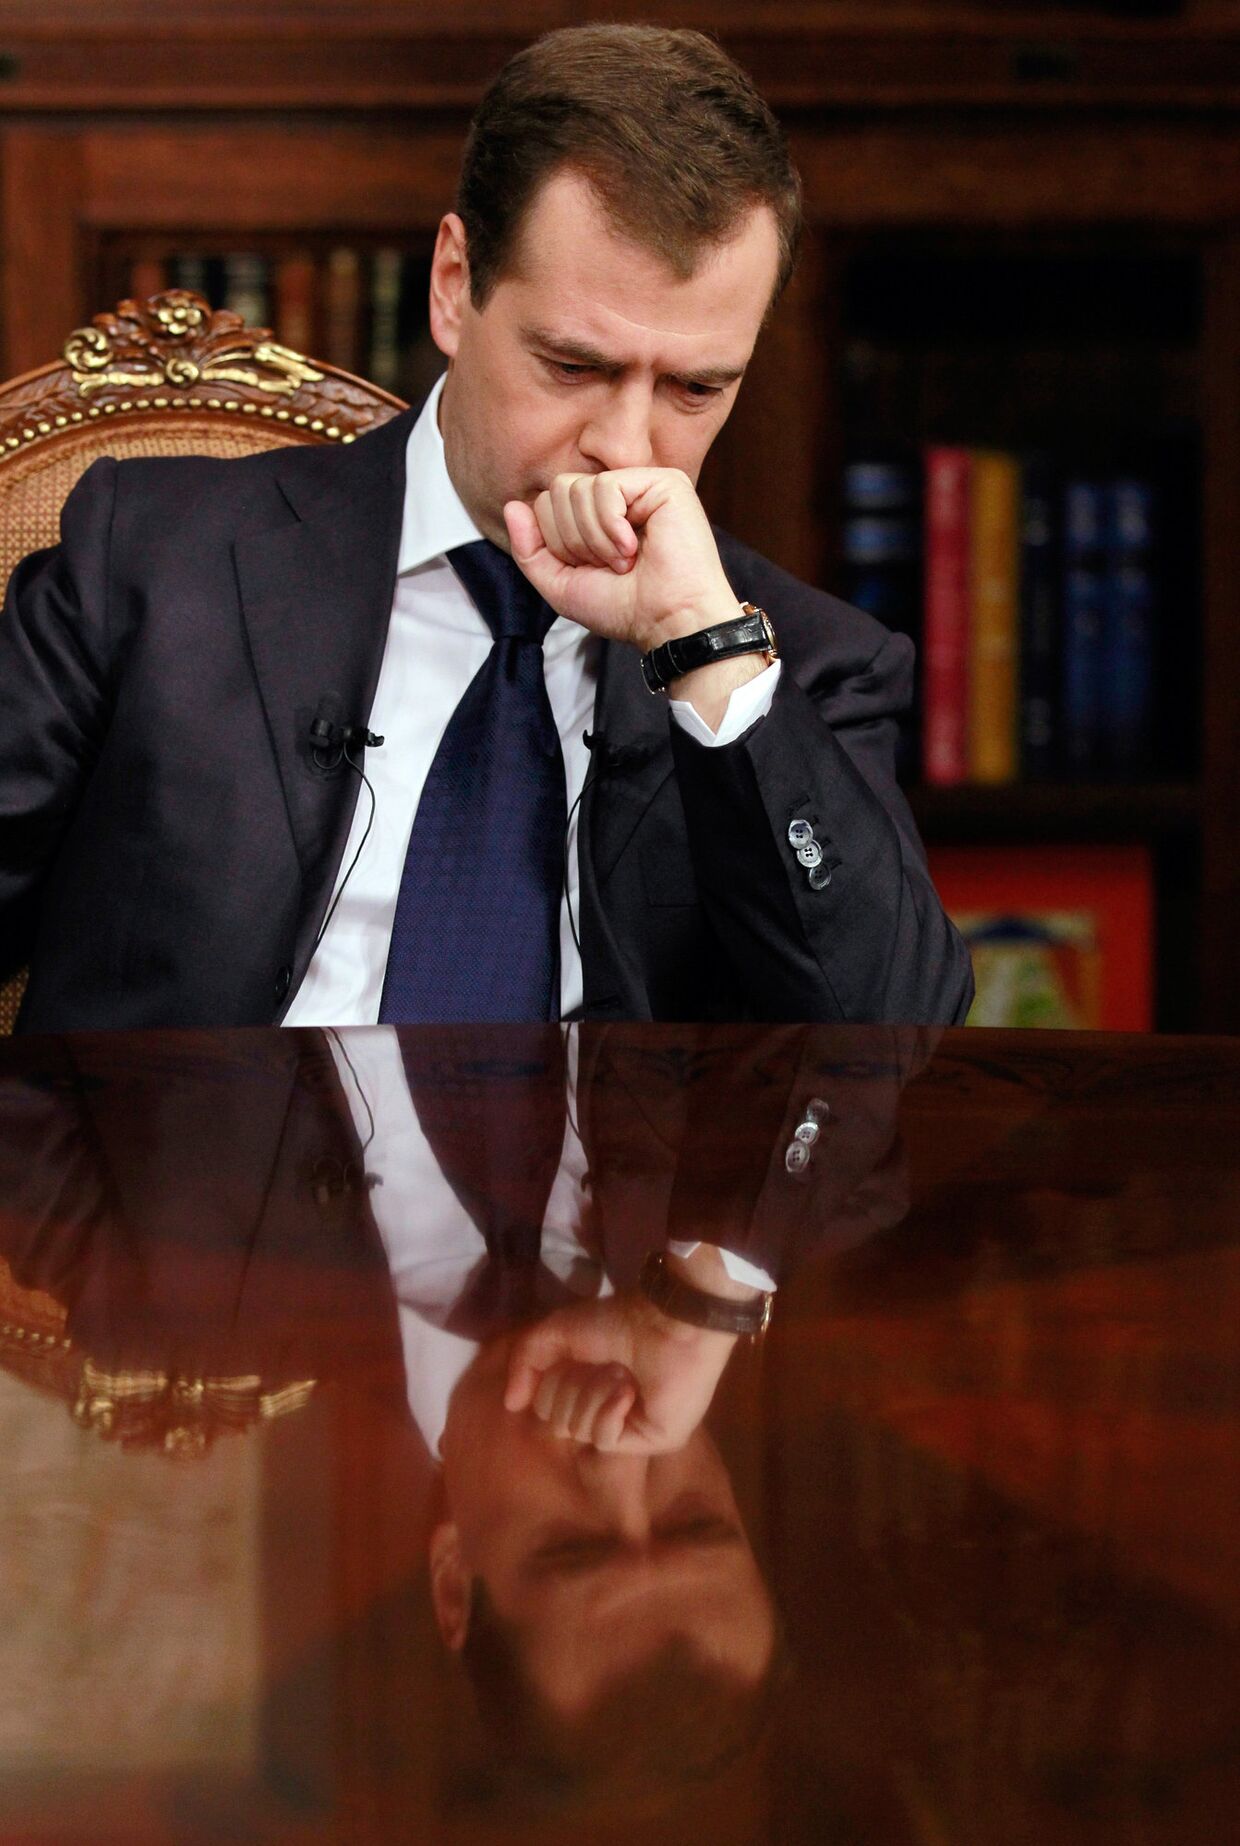 Интервью Д.Медведева главам трех федеральных каналов: Первого, России 1 и НТВ